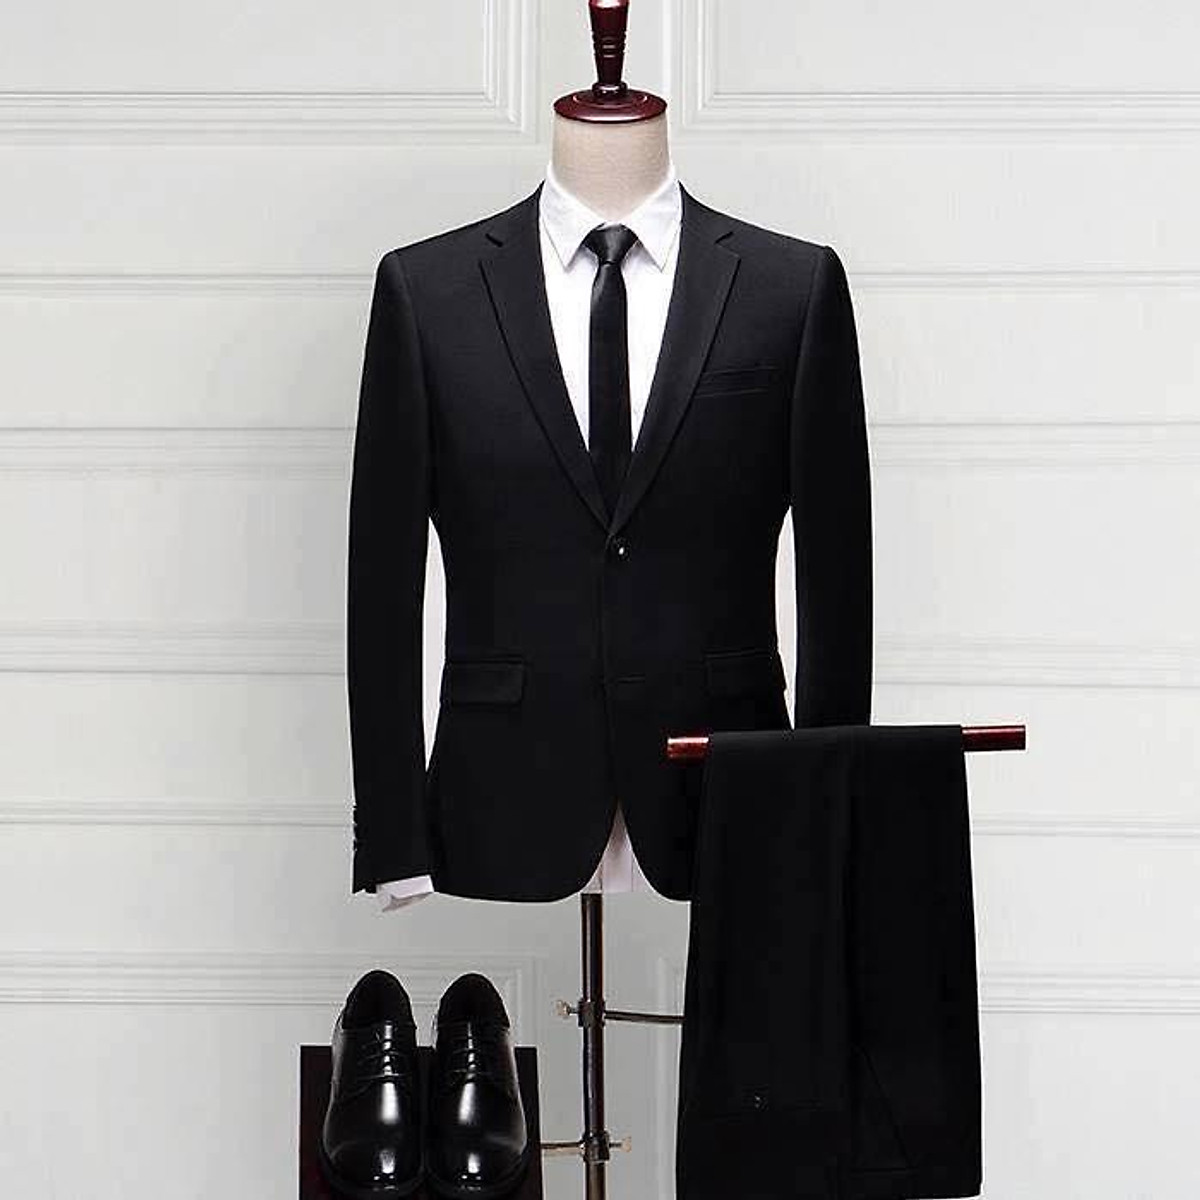 Áo sơ mi cổ vest ngắn tay from rộng 2 màu đen trắng phù hợp cho cả Nam và  Nữ | Lazada.vn